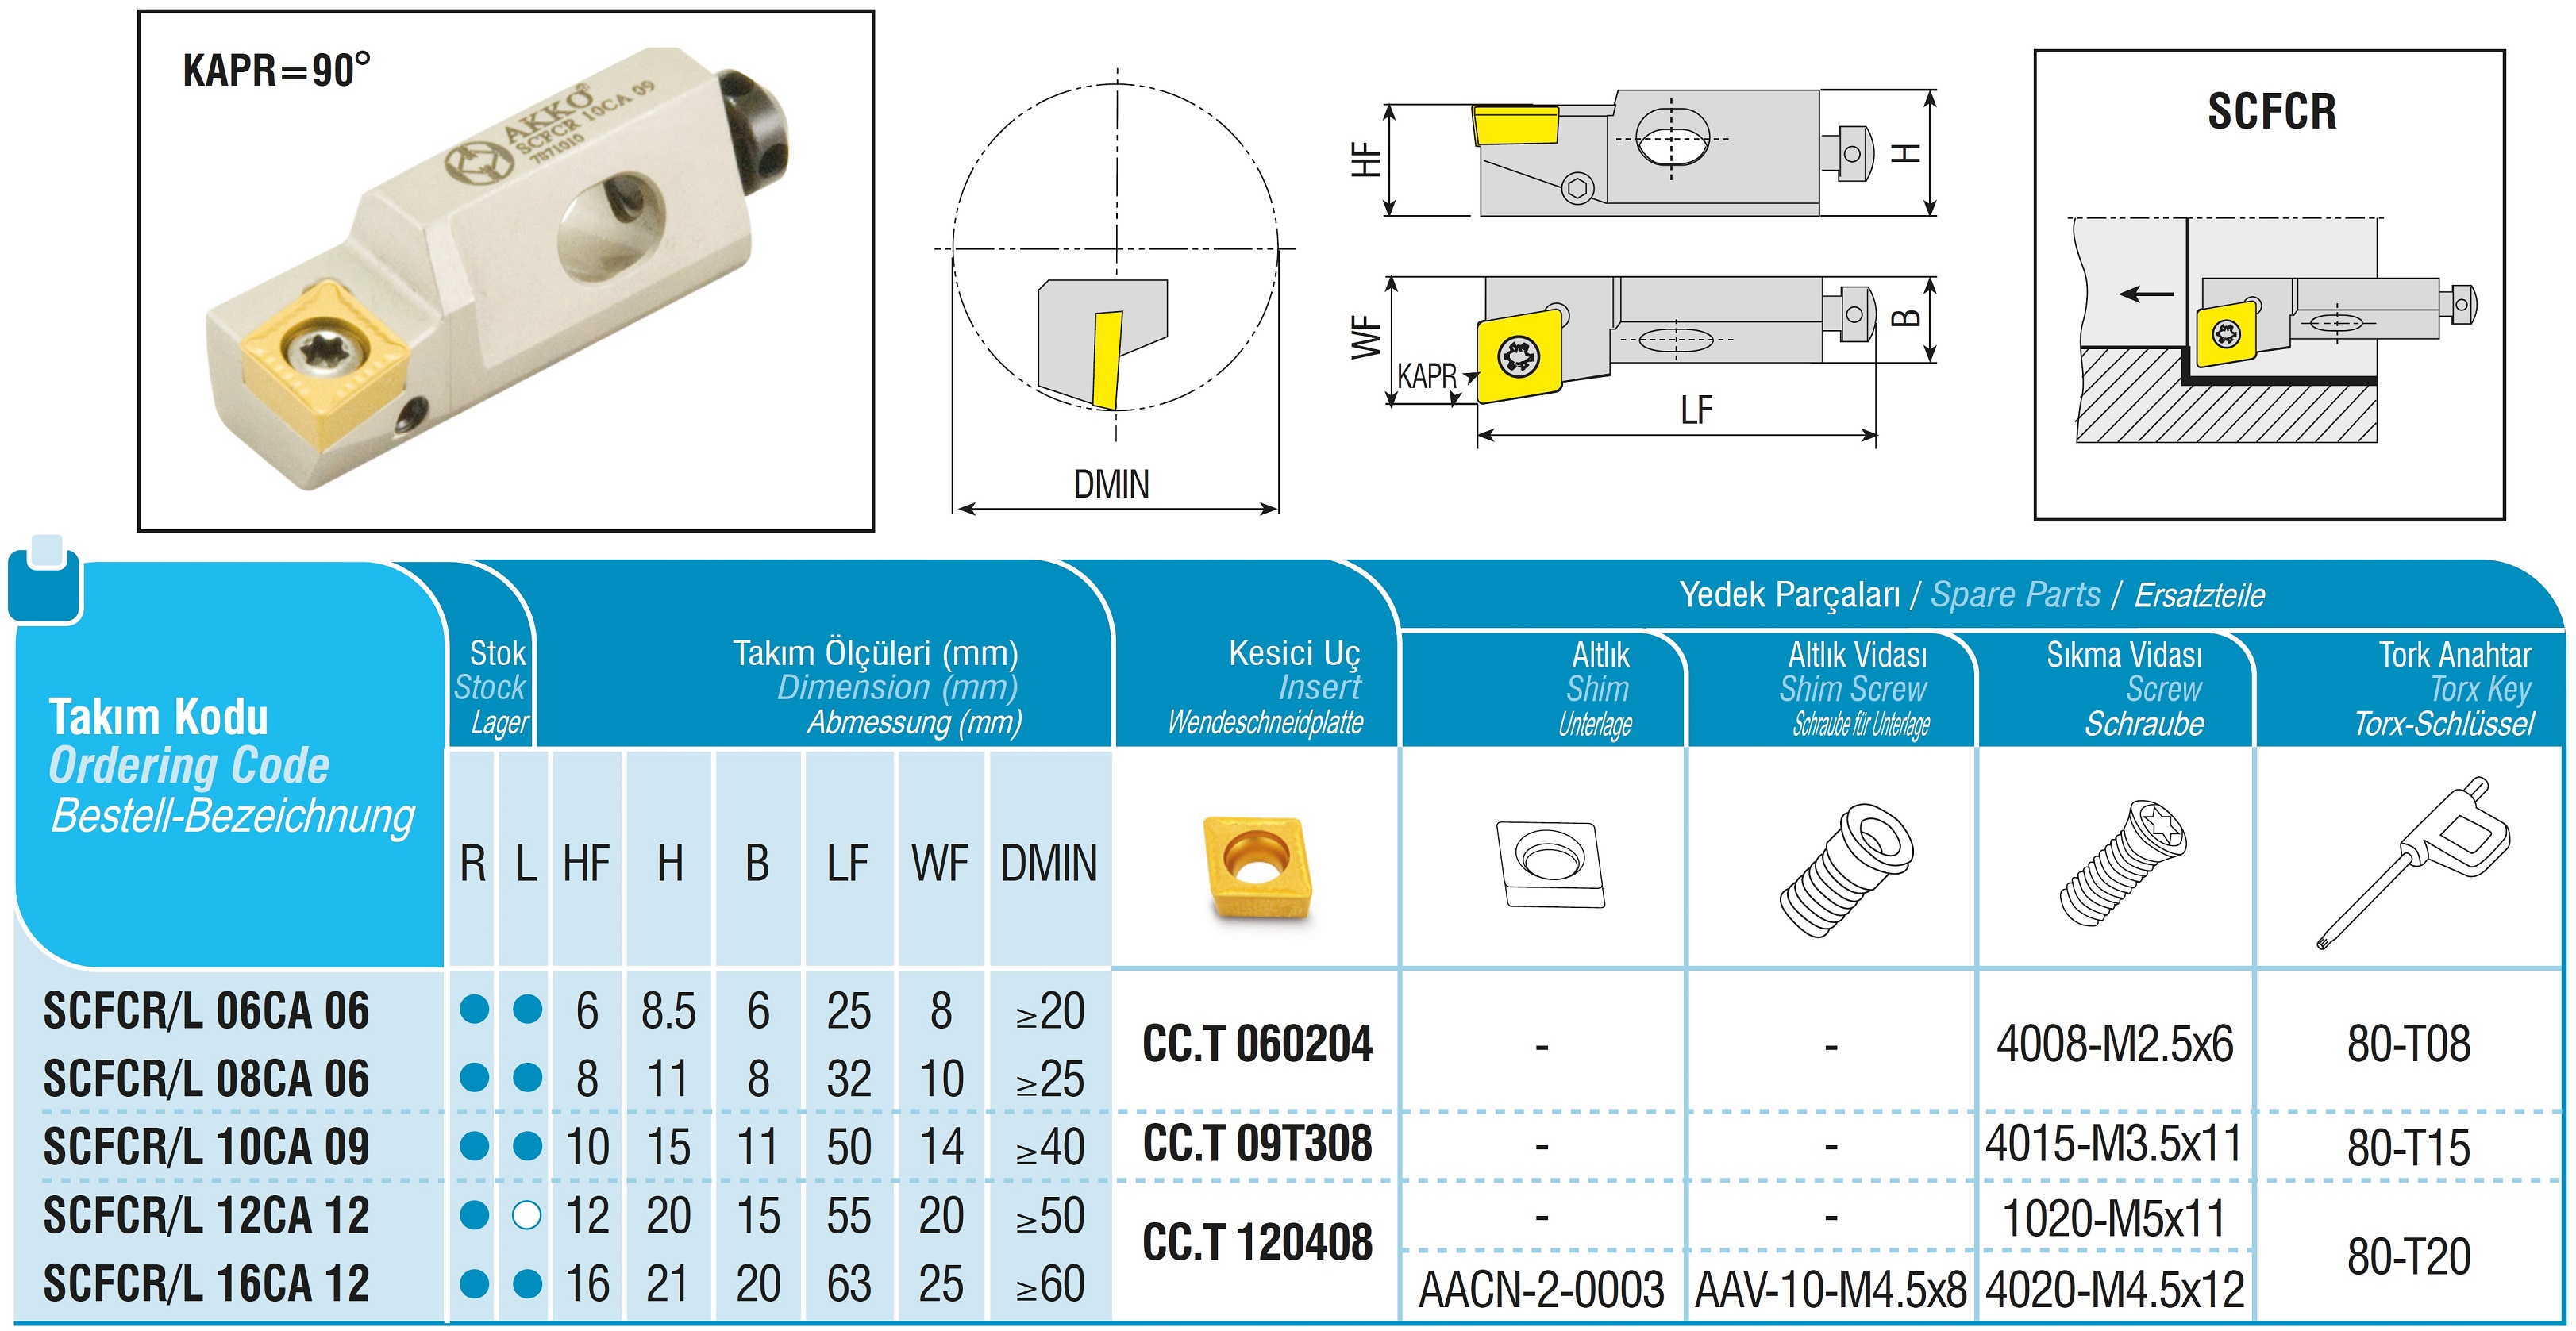 AKKO-Kurzdrehhalter für ISO-WSP CC.T 120408 links, 90° Anstellwinkel